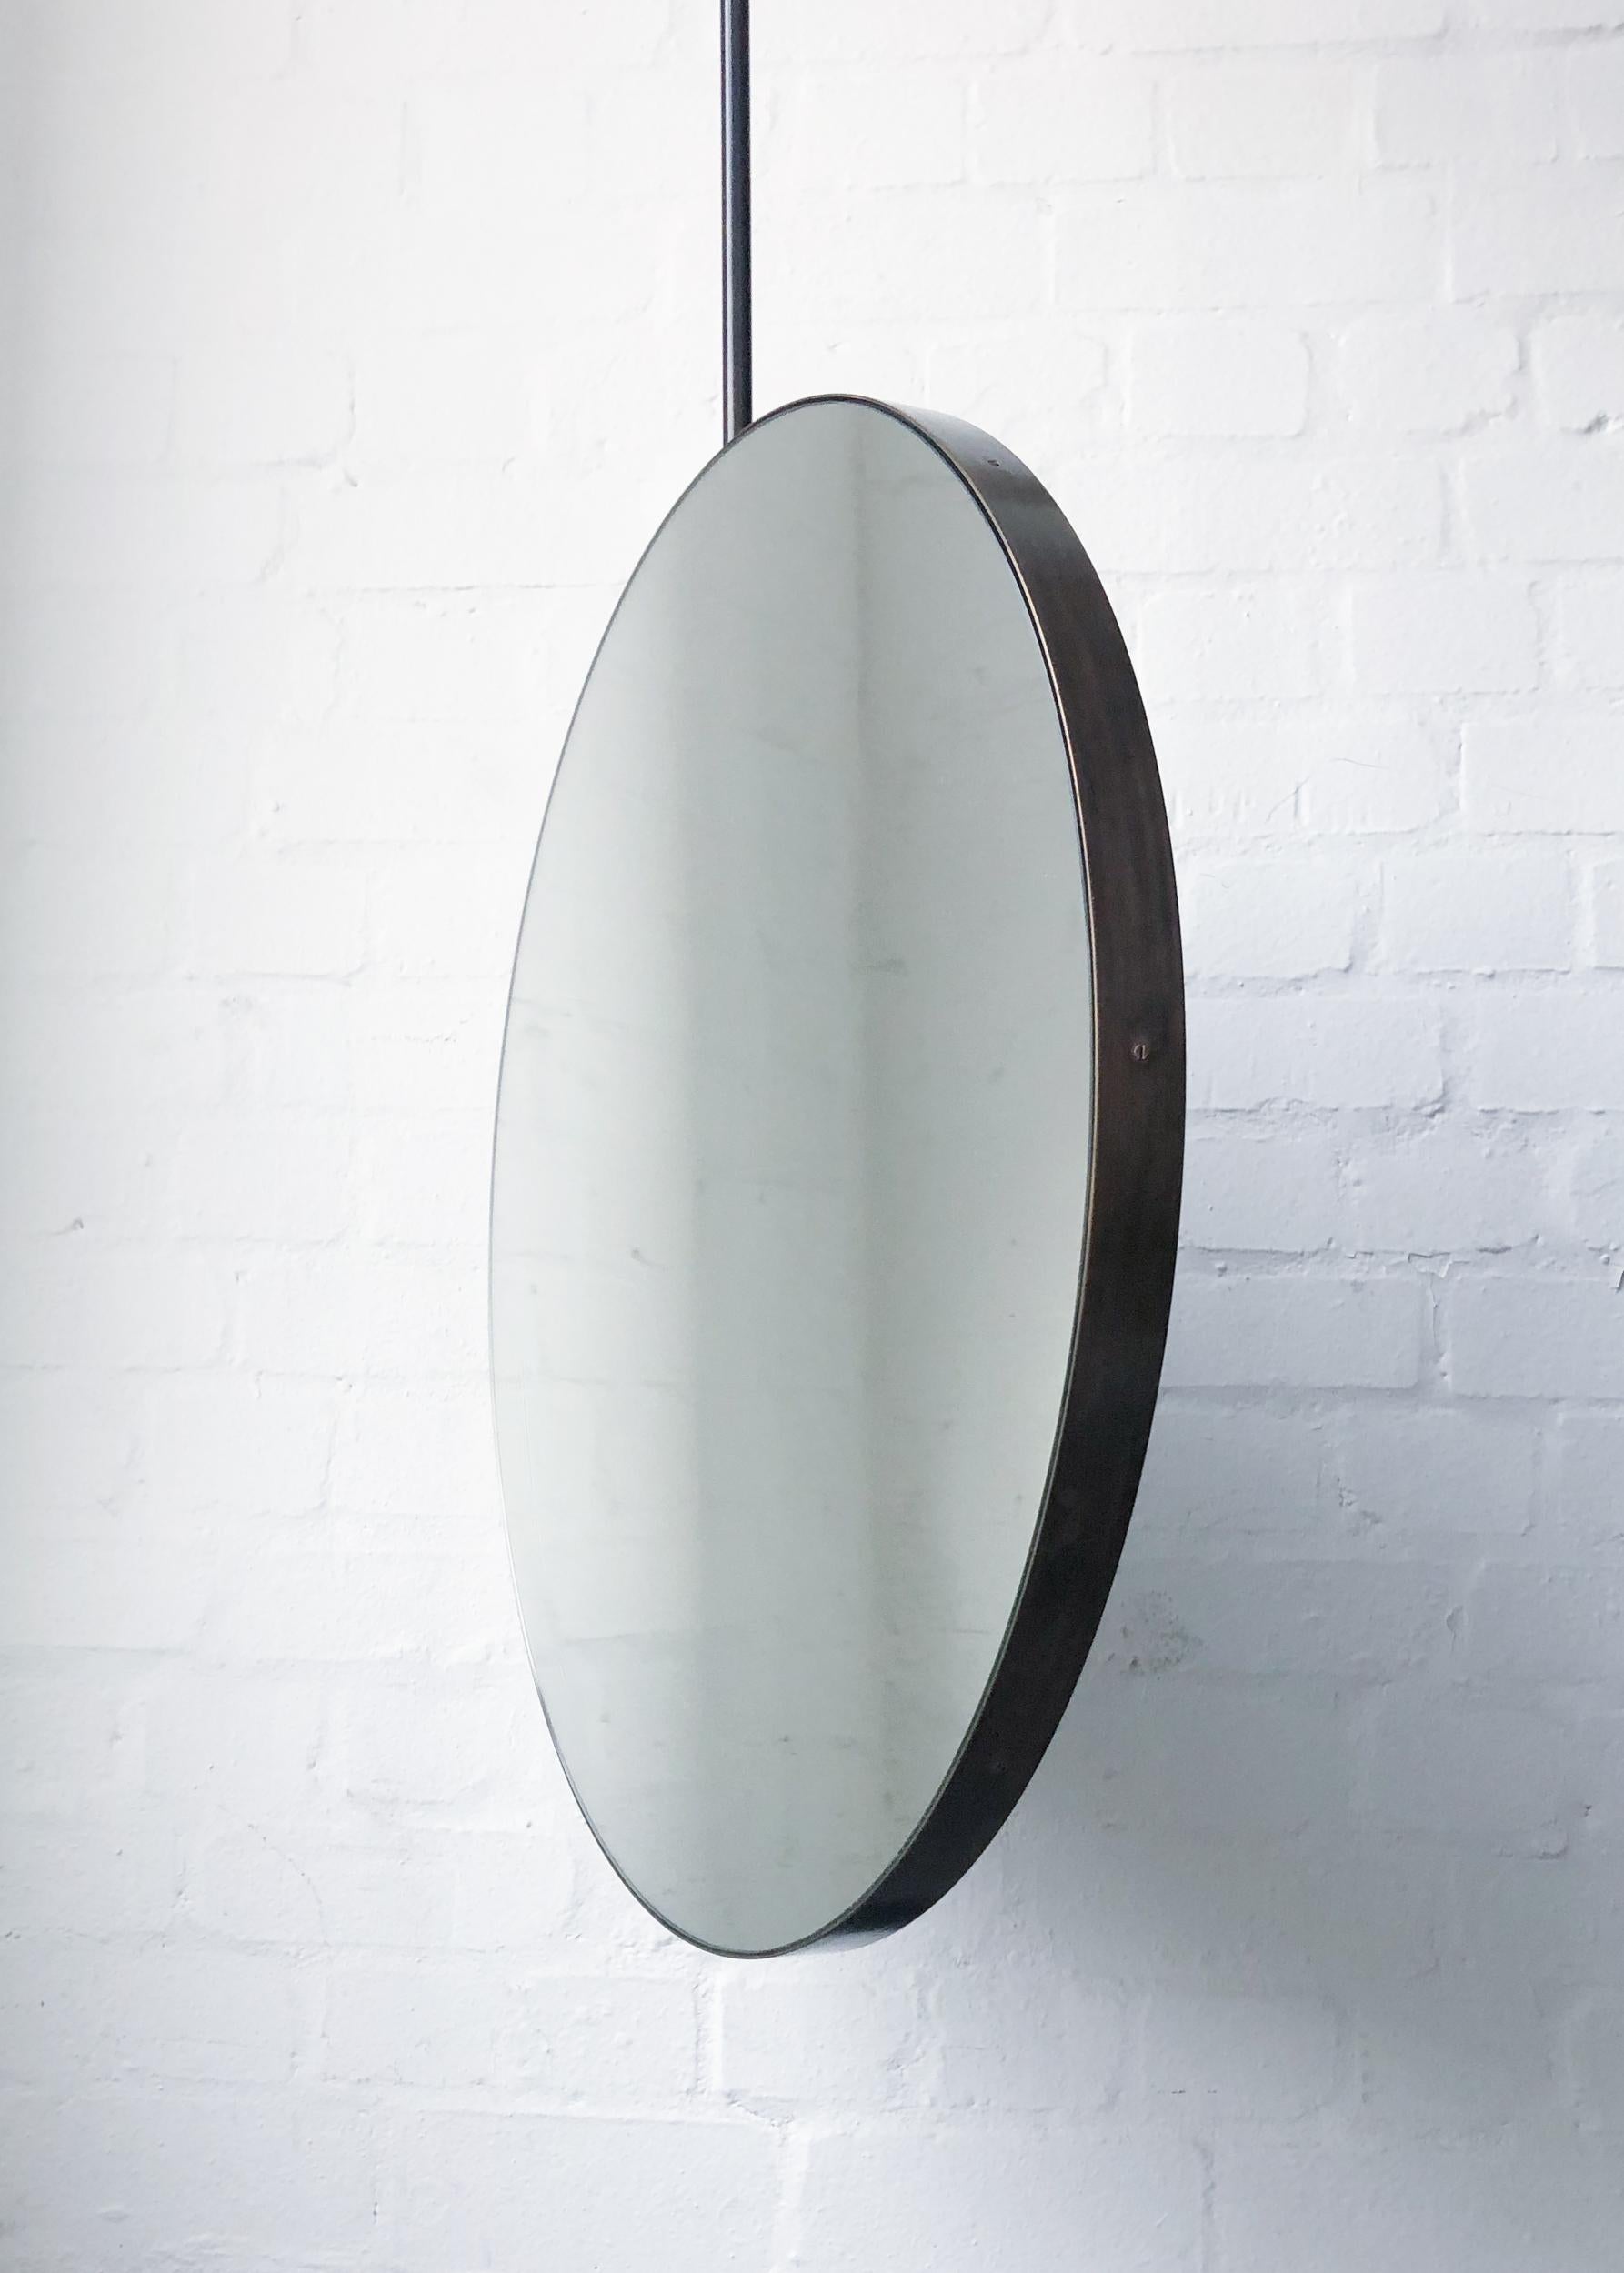 Einzigartiger und exquisiter, runder, an der Decke aufgehängter Spiegel mit einem Rahmen aus Messing, der mit einer eleganten Bronzepatina versehen ist.

550mm (21.65